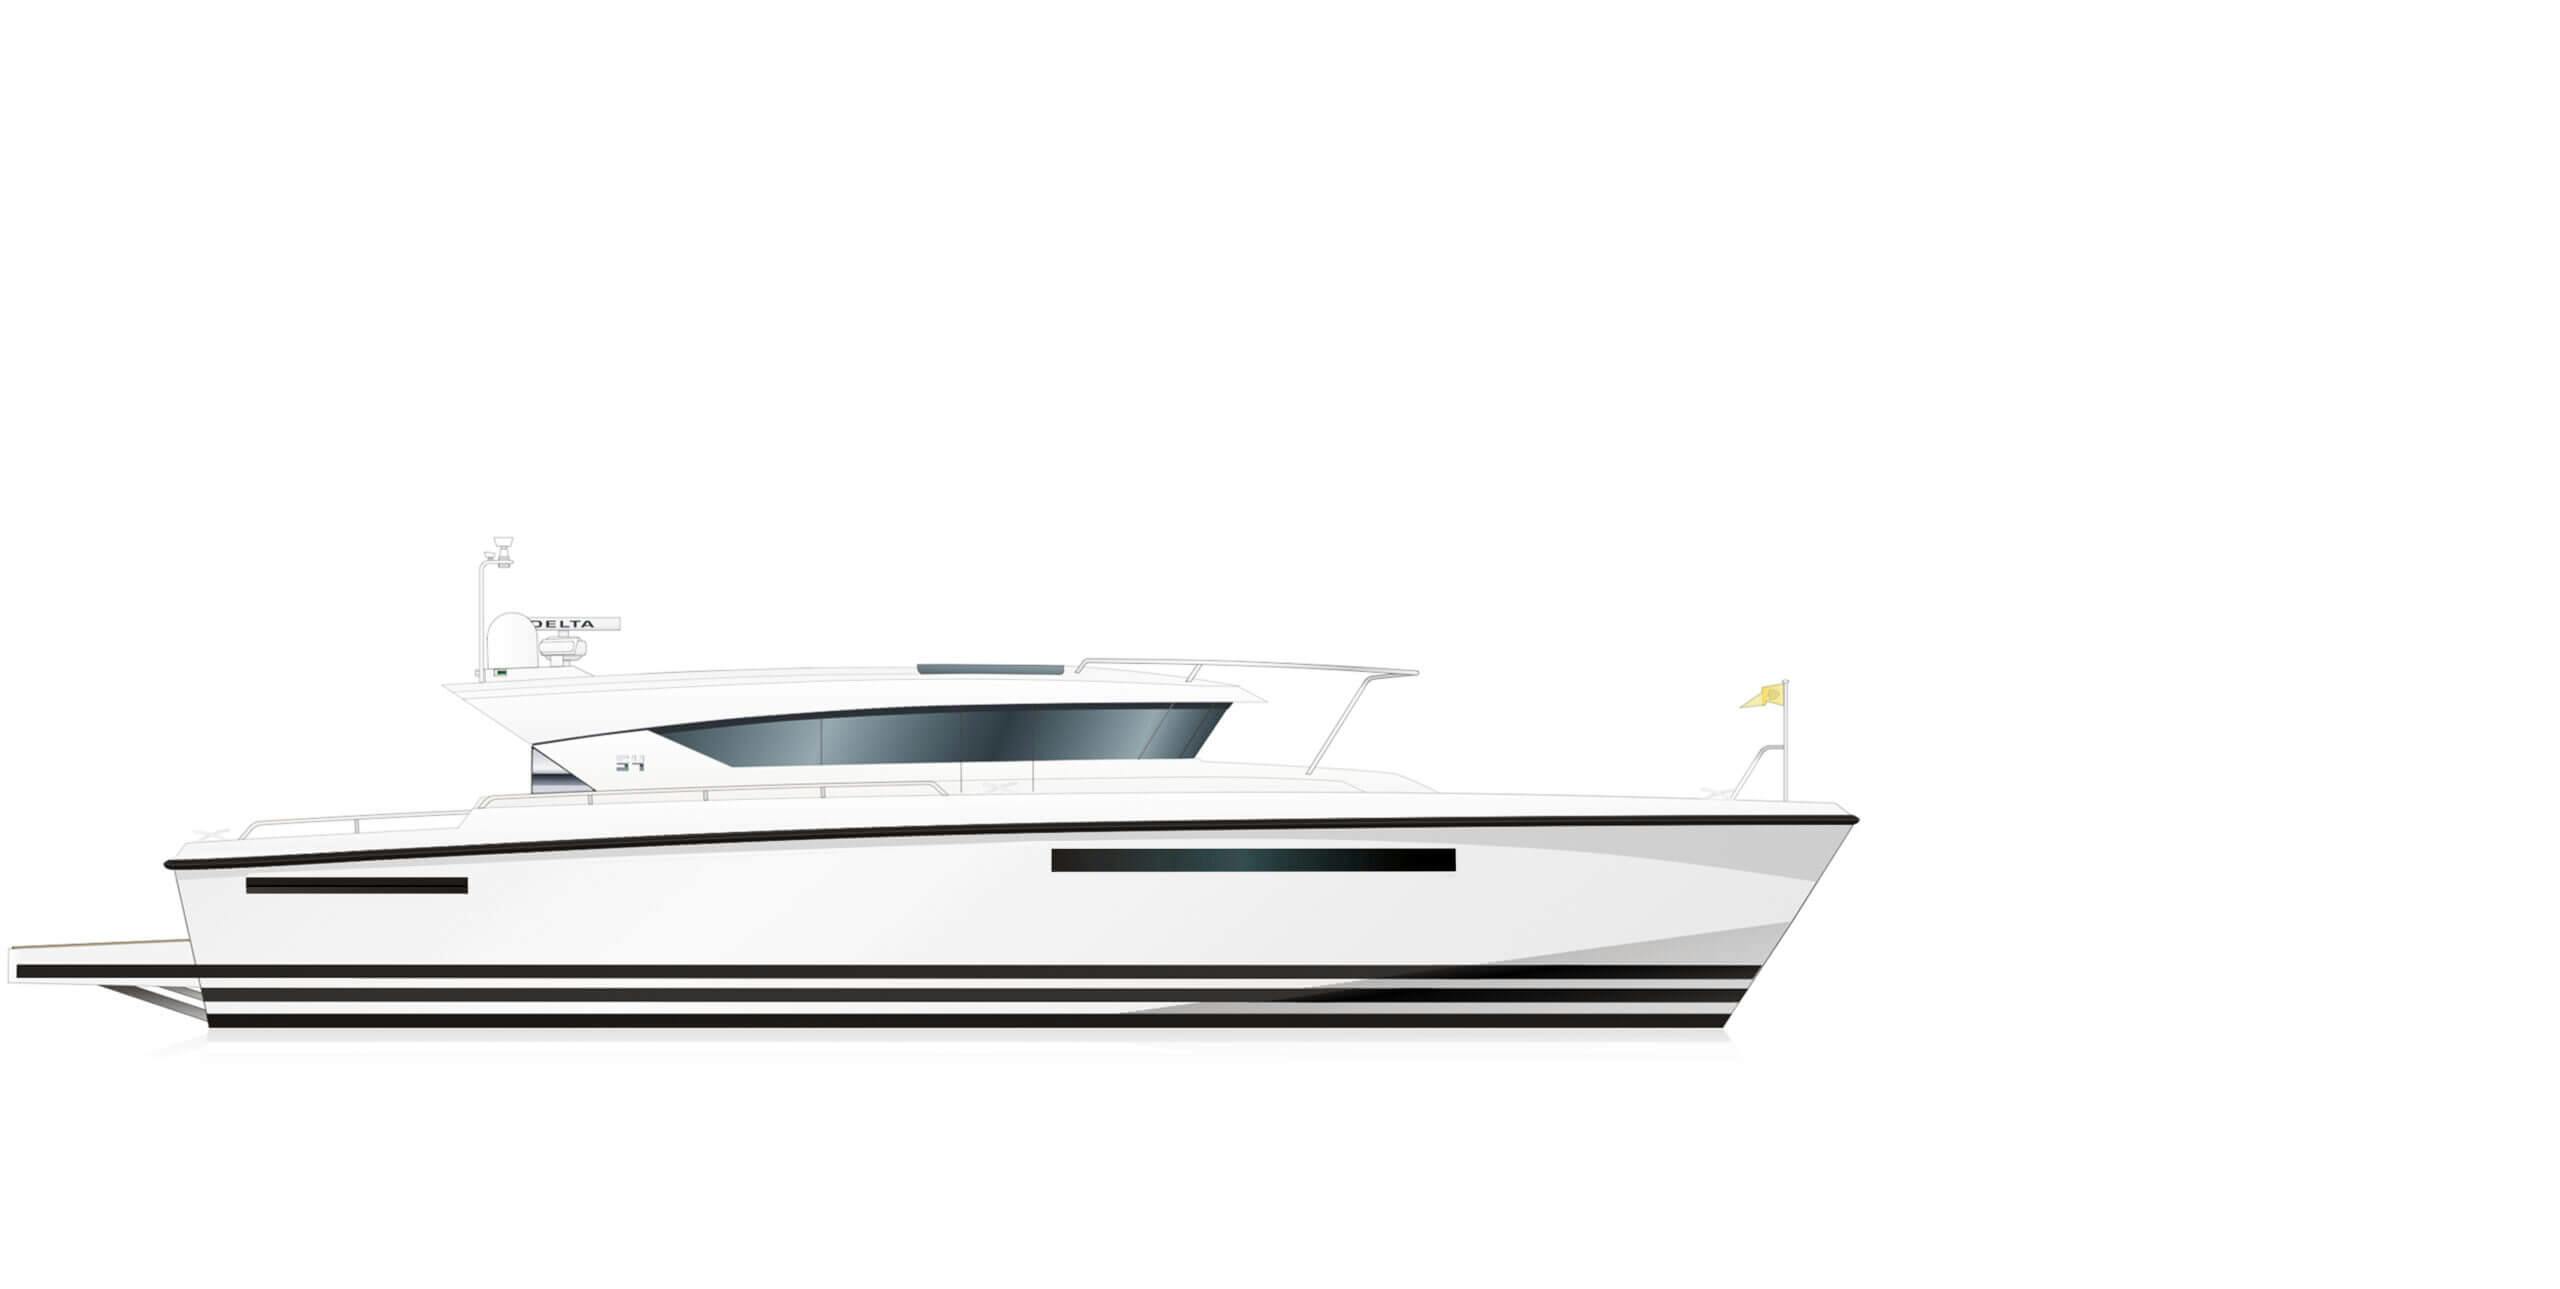 Boat Model: rhoddelta_sec3_delta_54ips_1